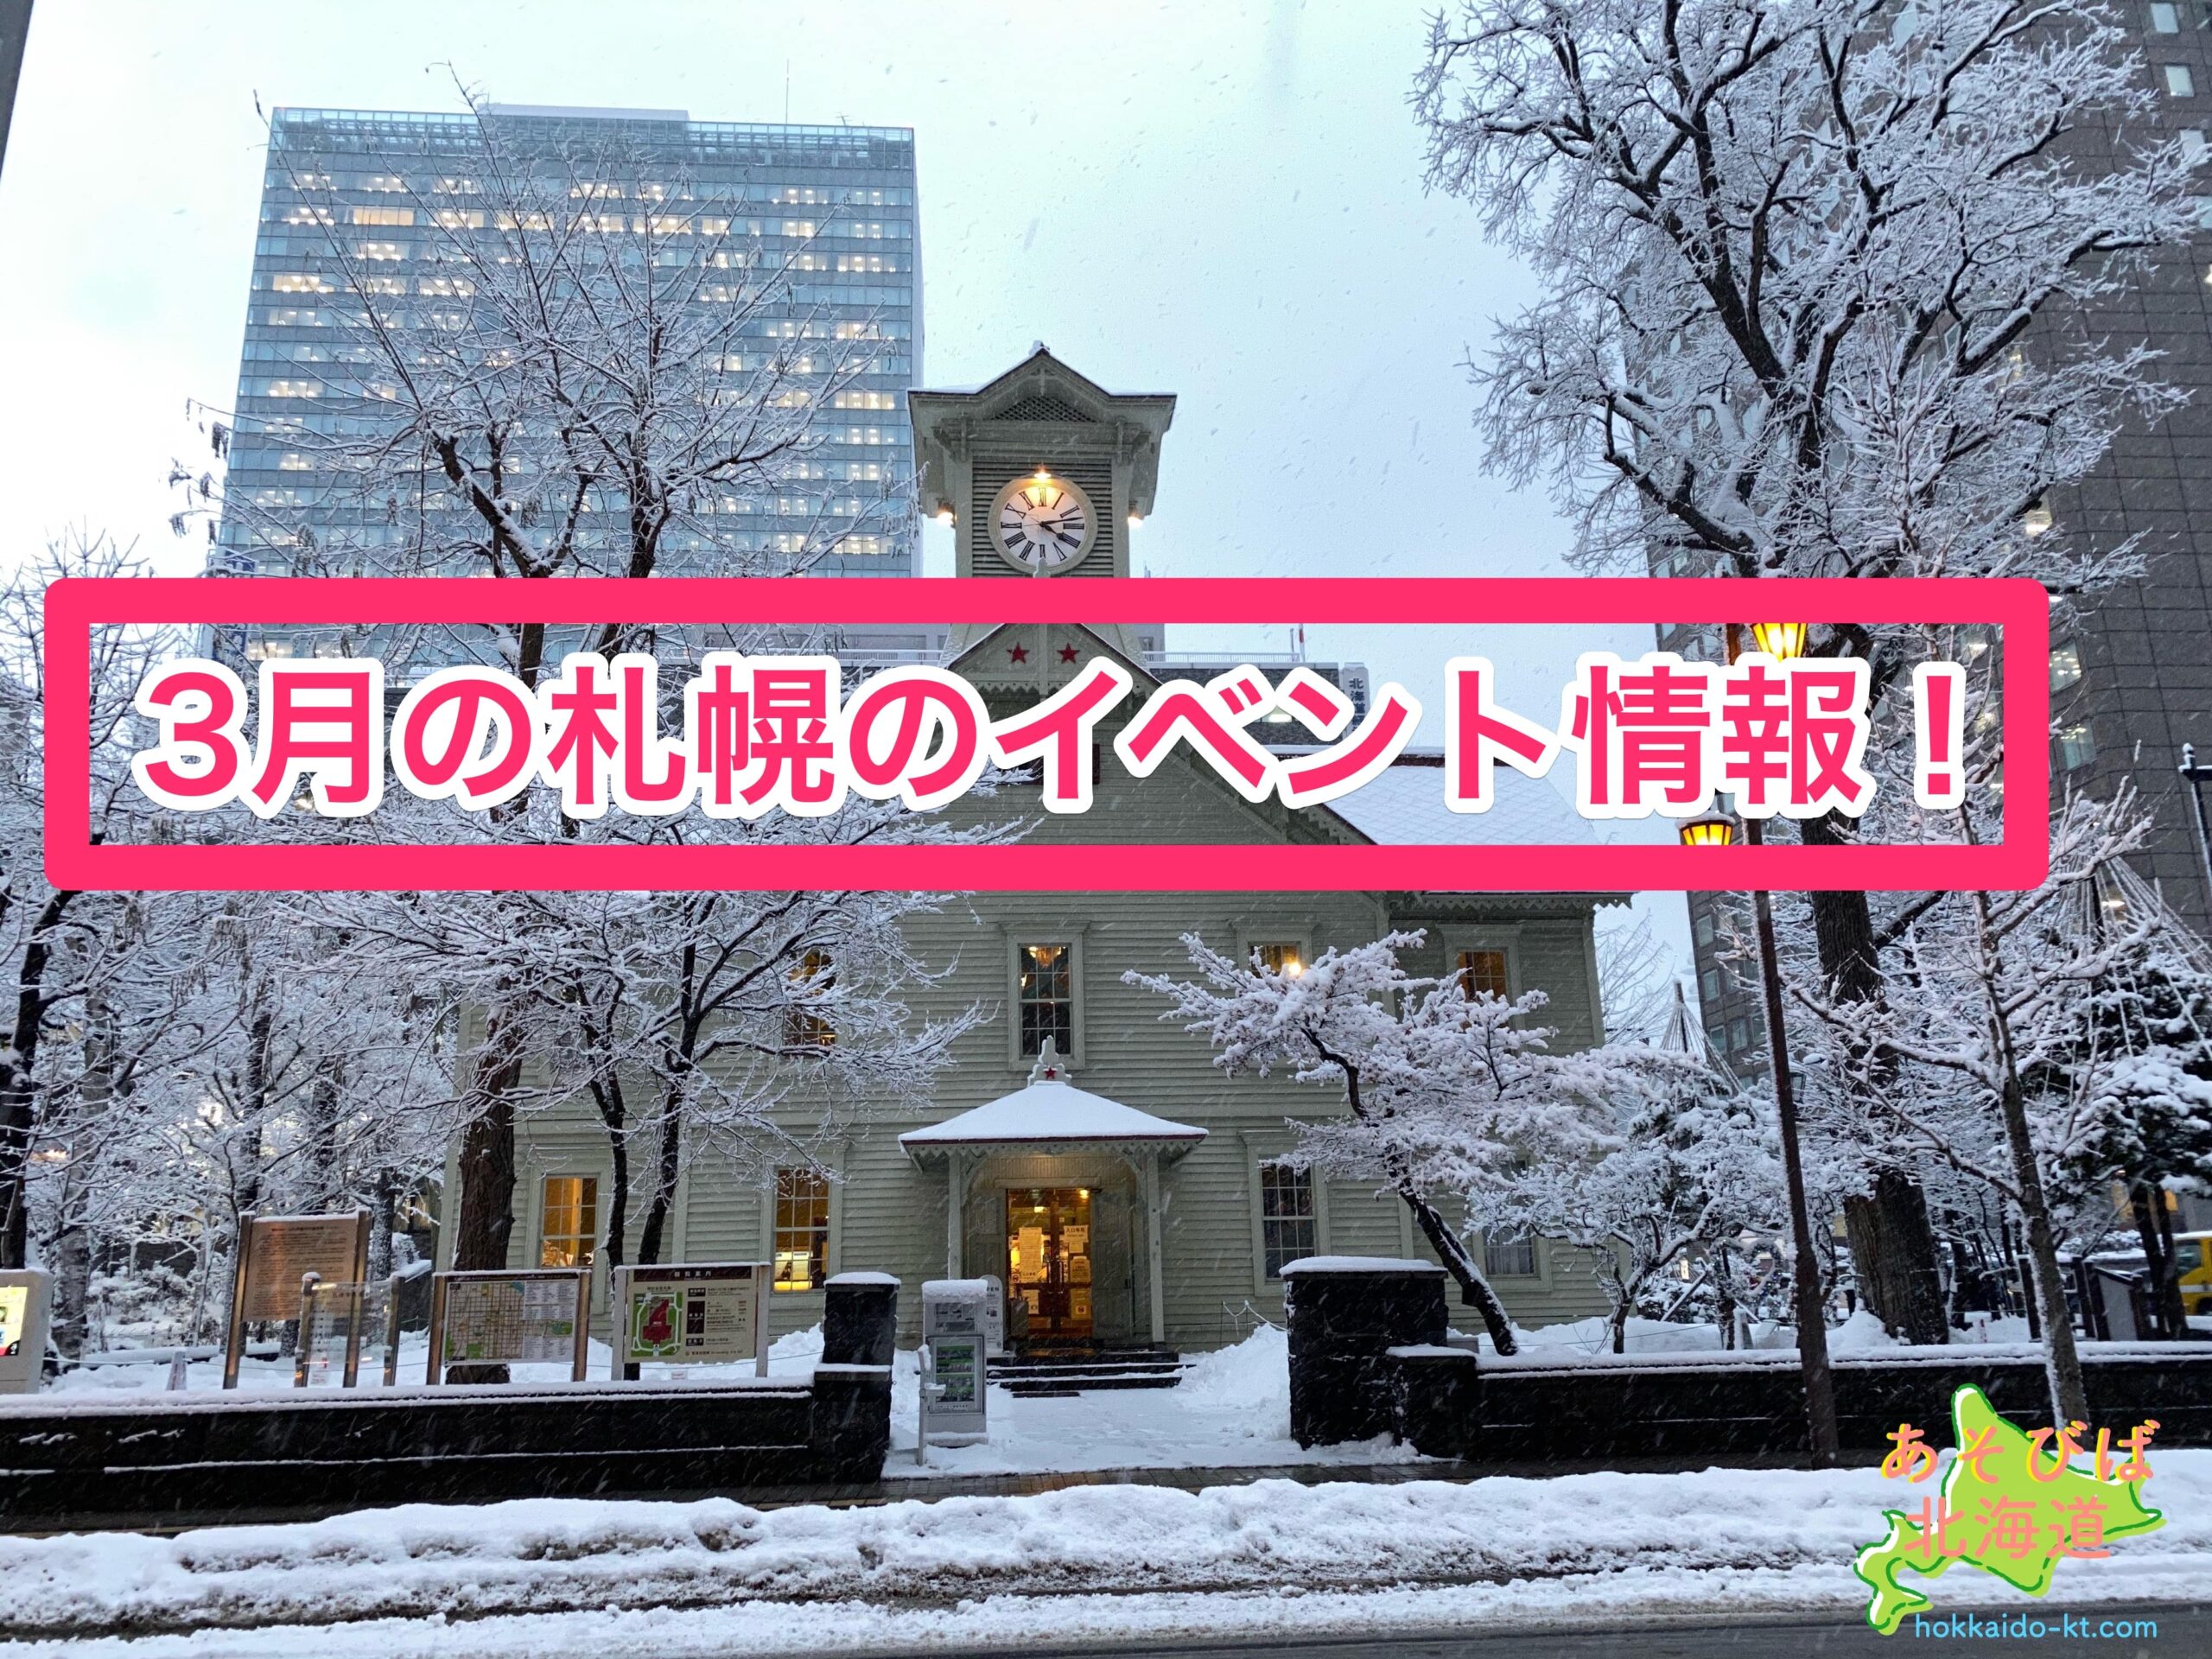 3月の札幌のイベント情報